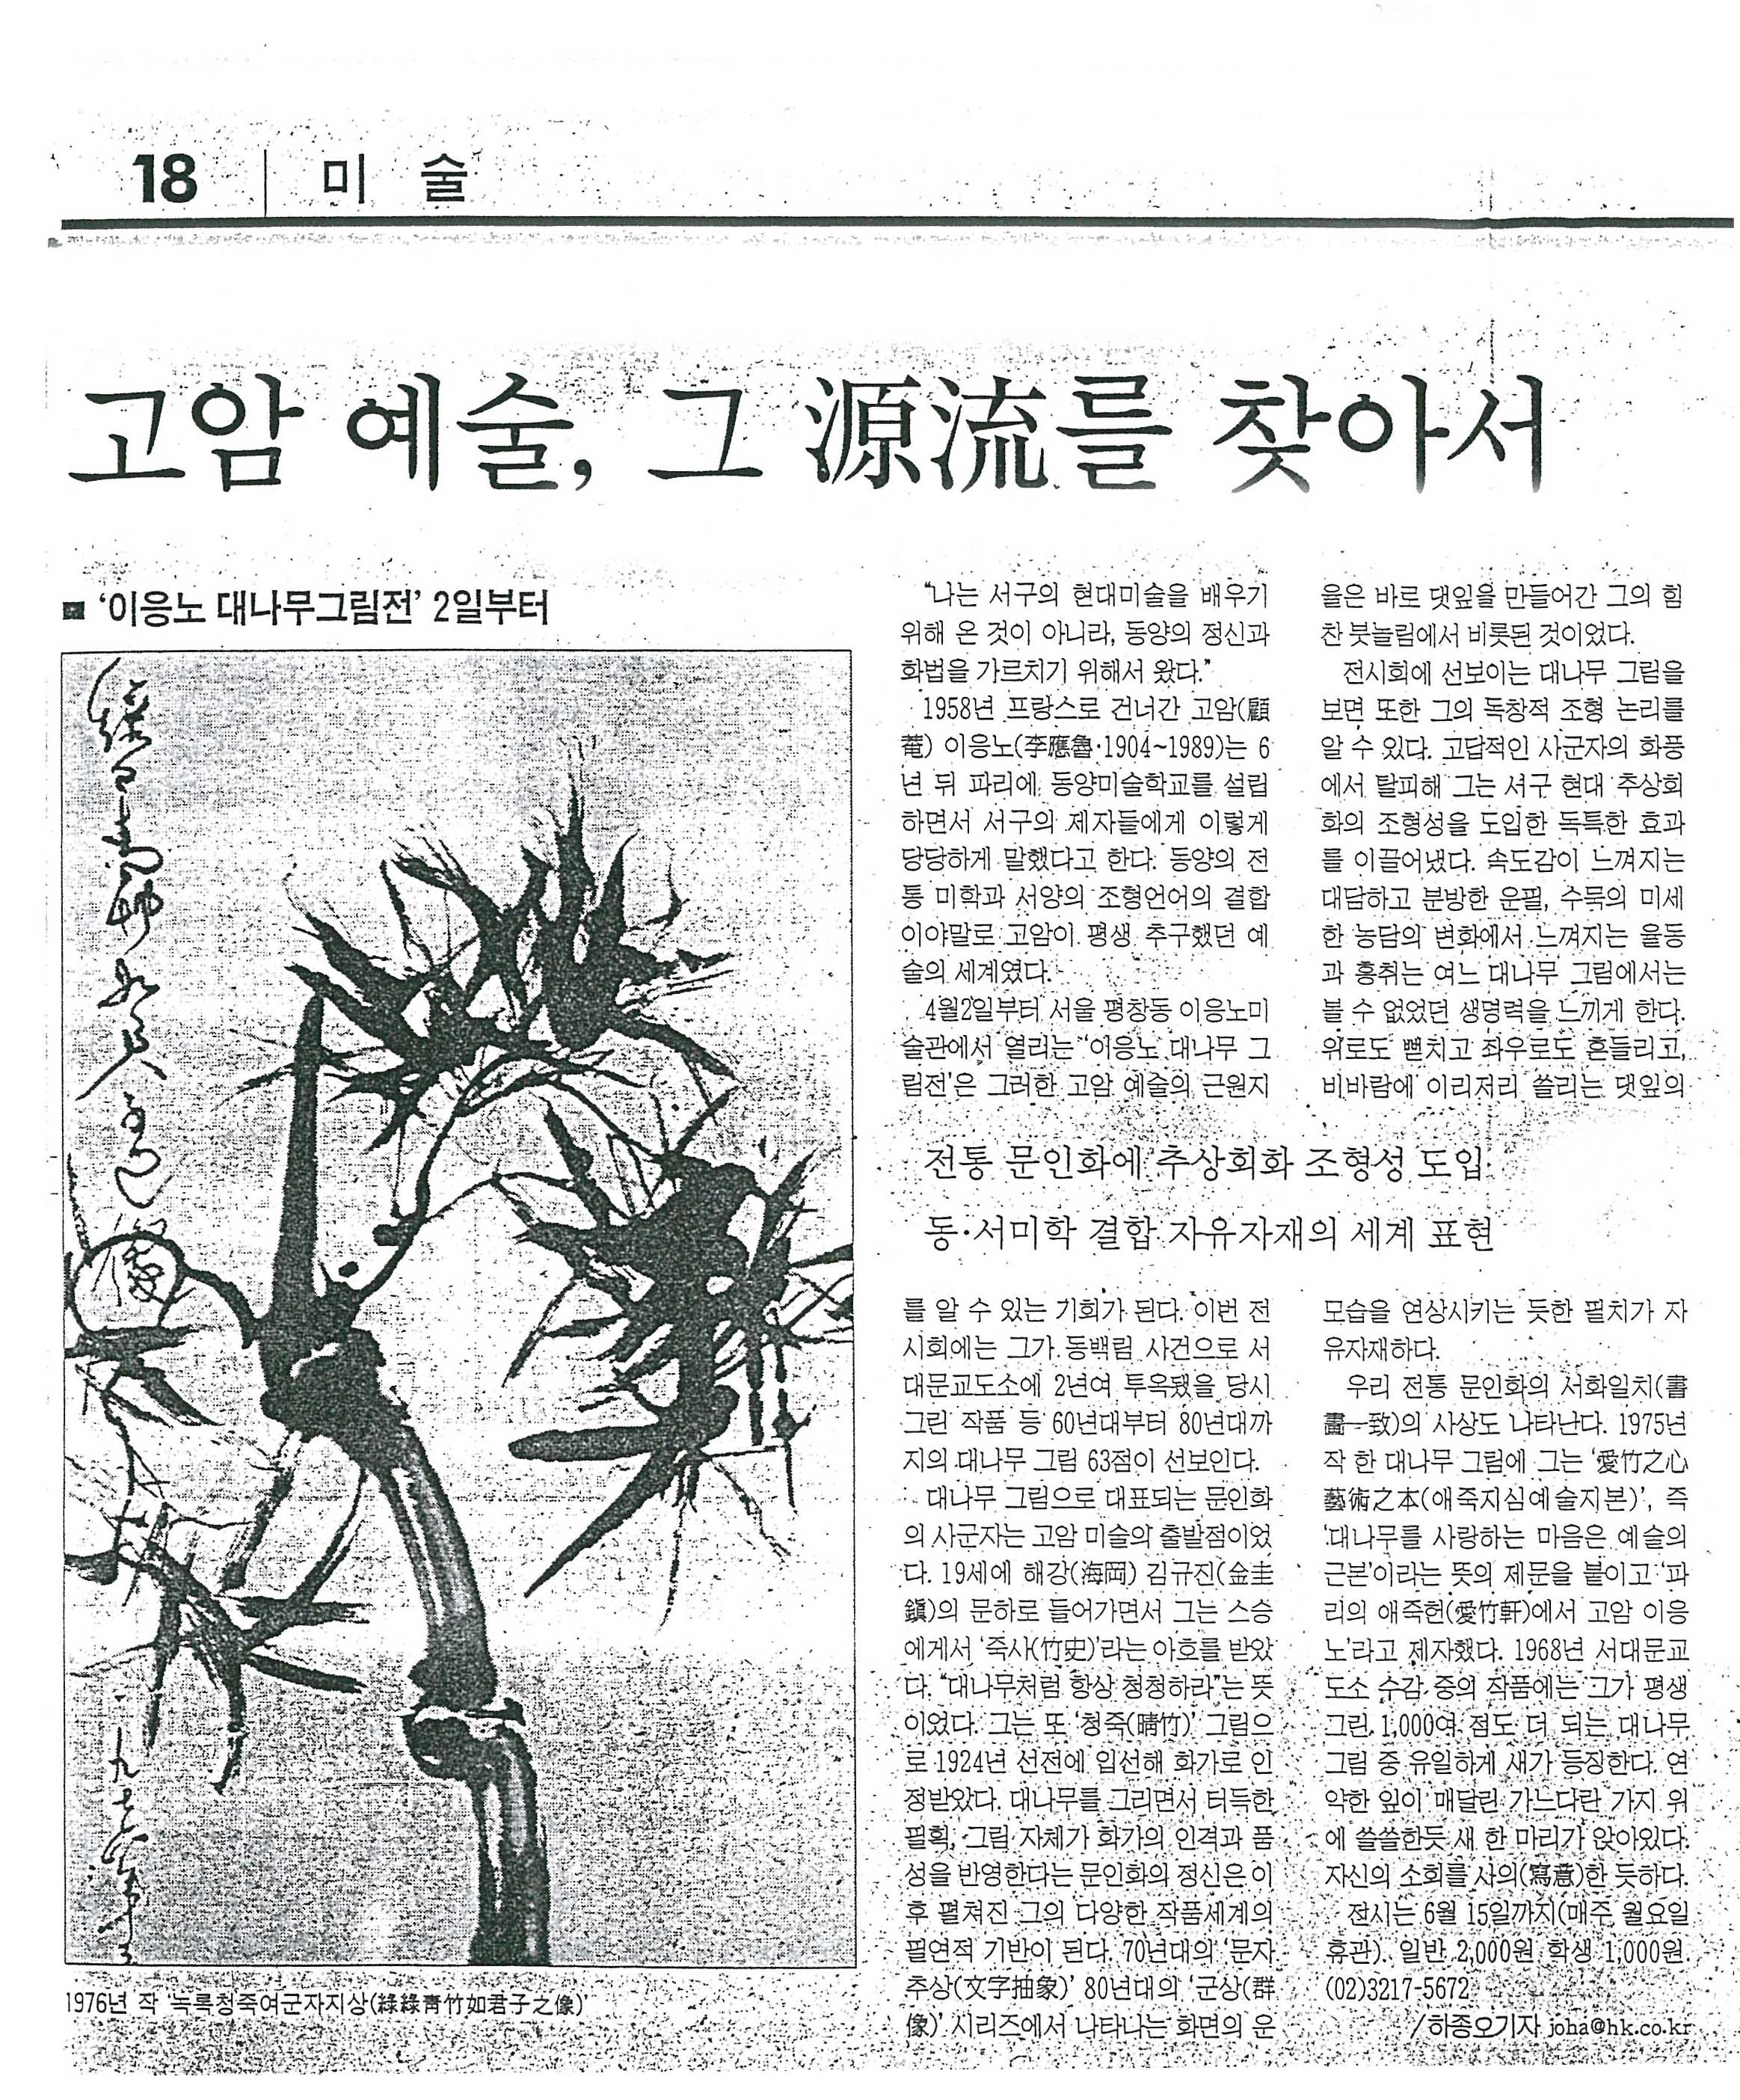  「고암 예술, 그 원류(源流)를 찾아서」, 『한국일보』 